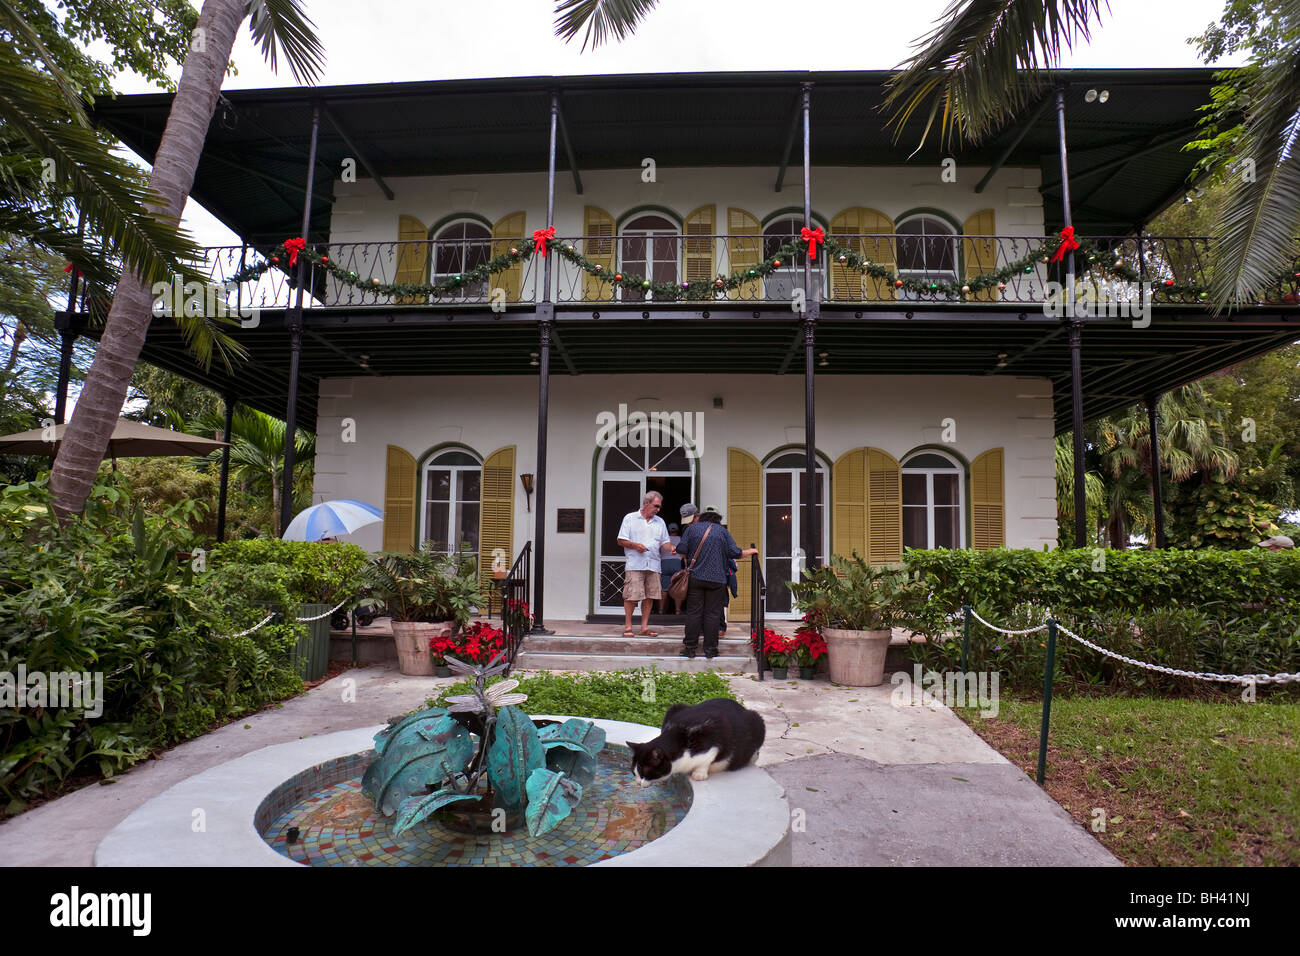 Ernest Hemingway House, Key West, Florida Stock Photo